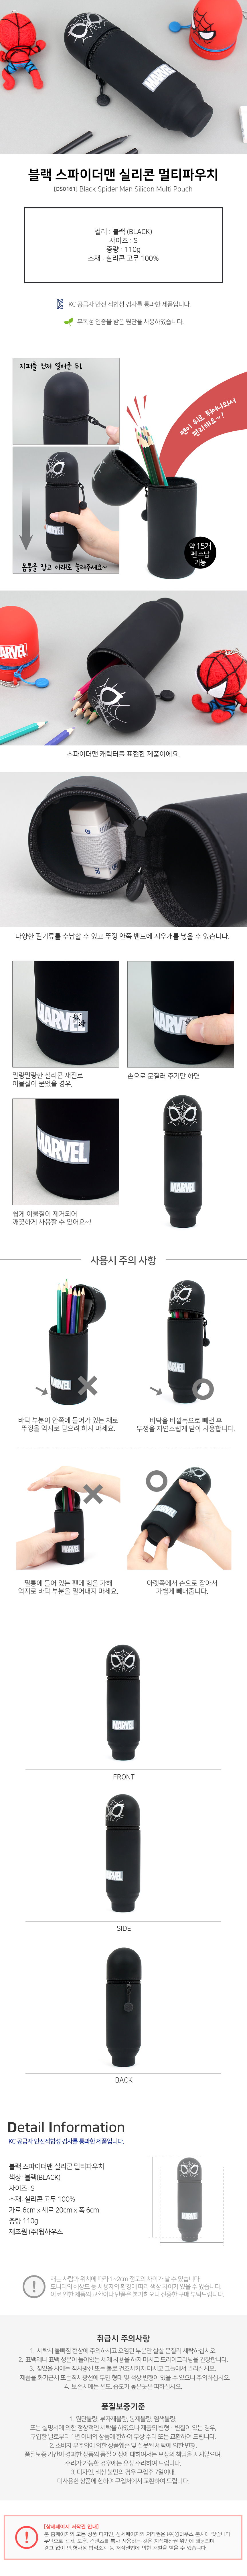 韓國winghouse MARVEL鉛筆盒 / 直立式筆盒-黑色蜘蛛人